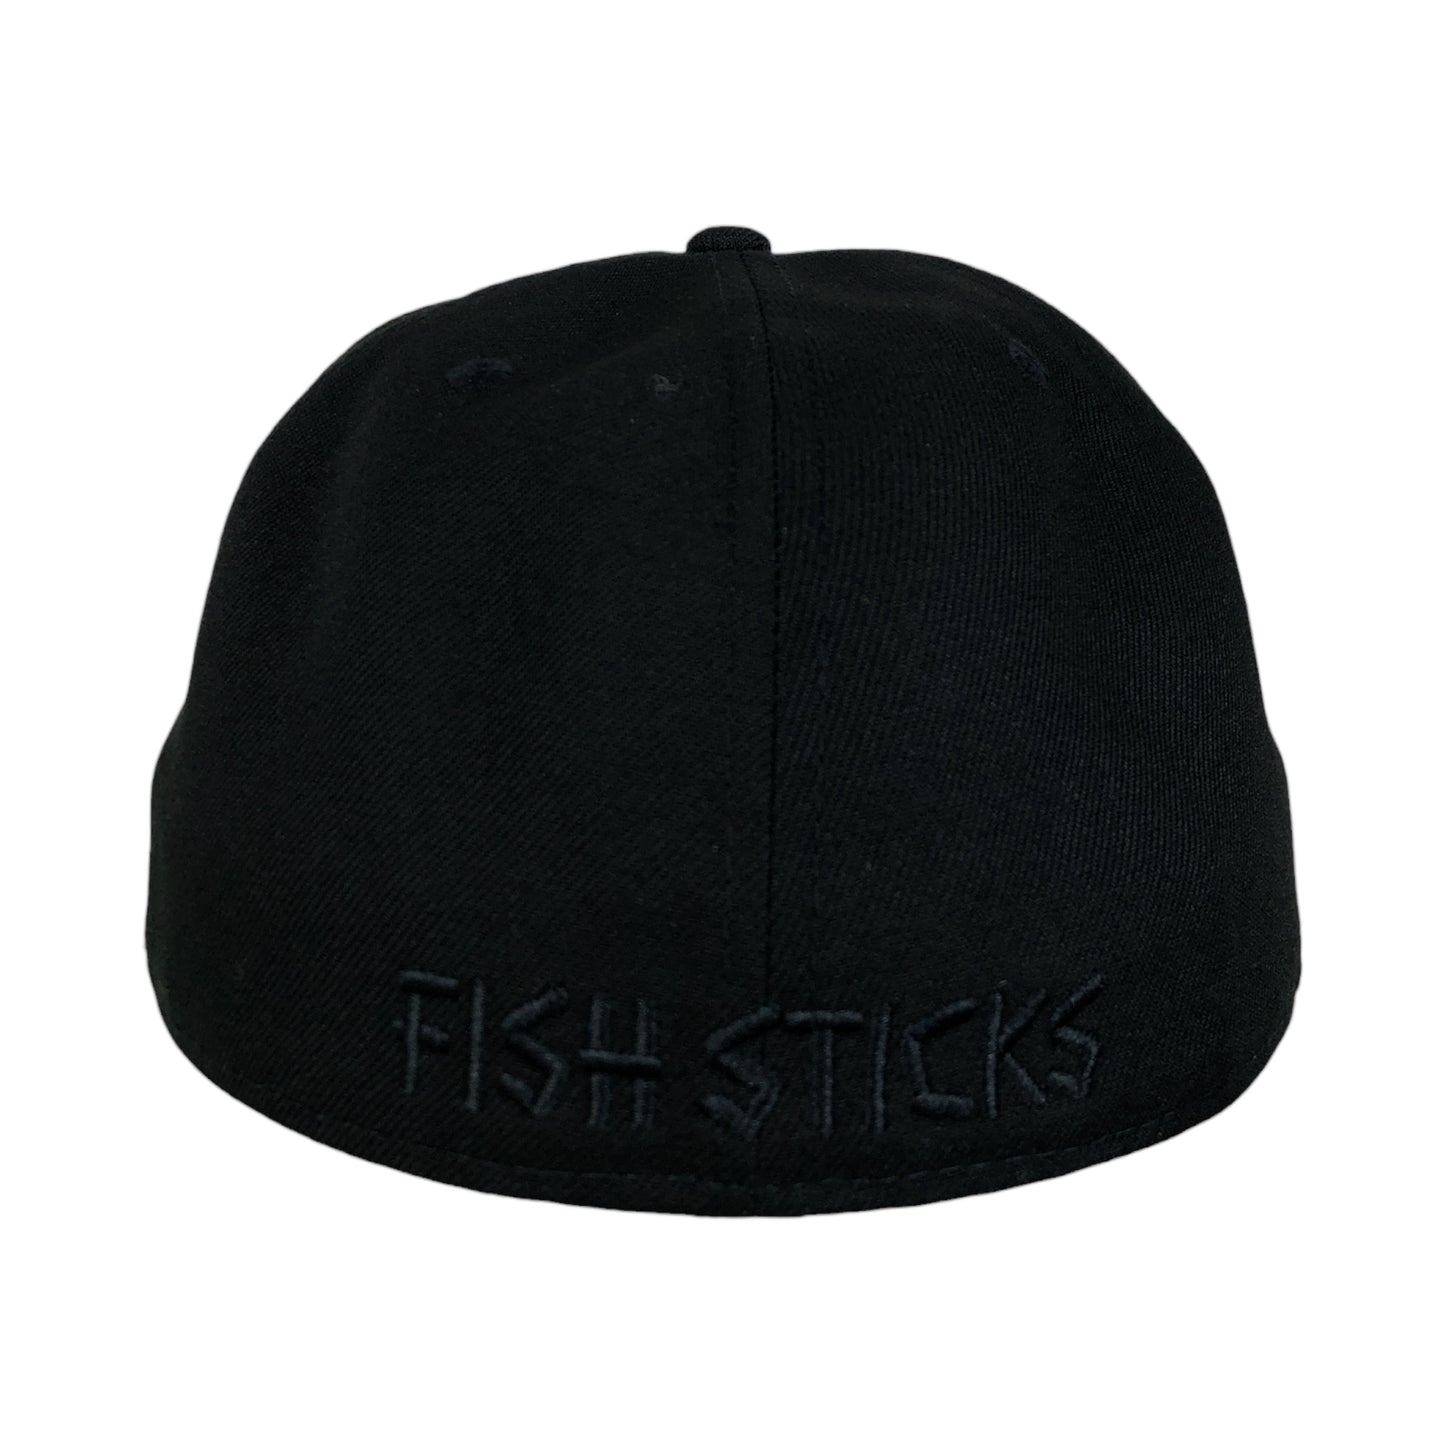 New Era 59FIFTTY Fish Sticks Blackout Hat